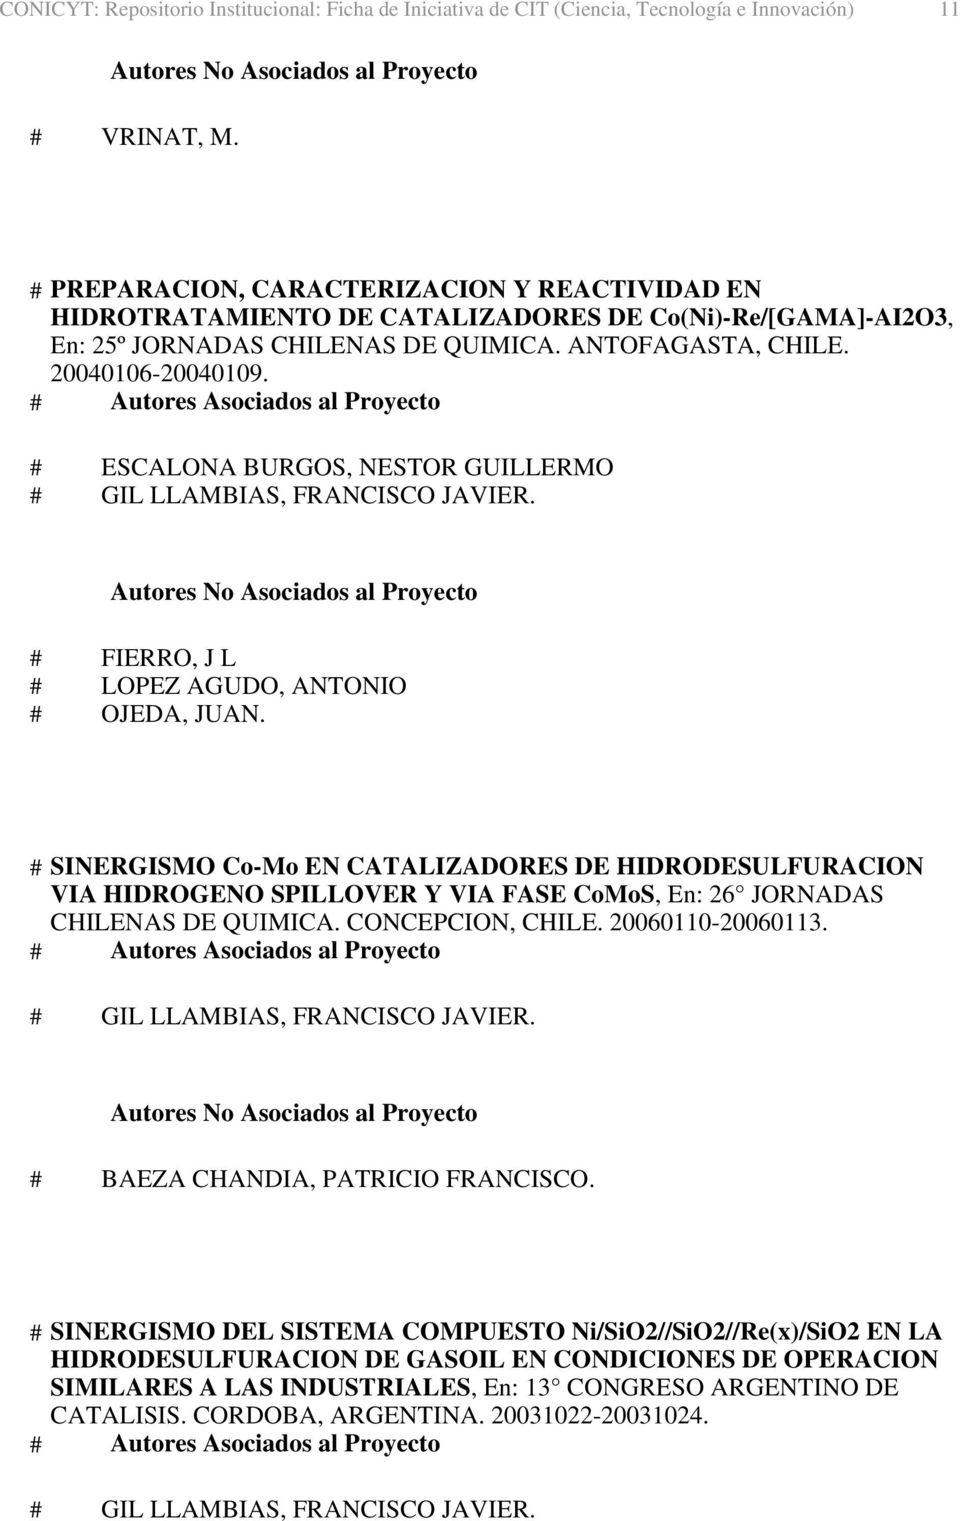 20040106-20040109. # FIERRO, J L # SINERGISMO Co-Mo EN CATALIZADORES DE HIDRODESULFURACION VIA HIDROGENO SPILLOVER Y VIA FASE CoMoS, En: 26 JORNADAS CHILENAS DE QUIMICA.